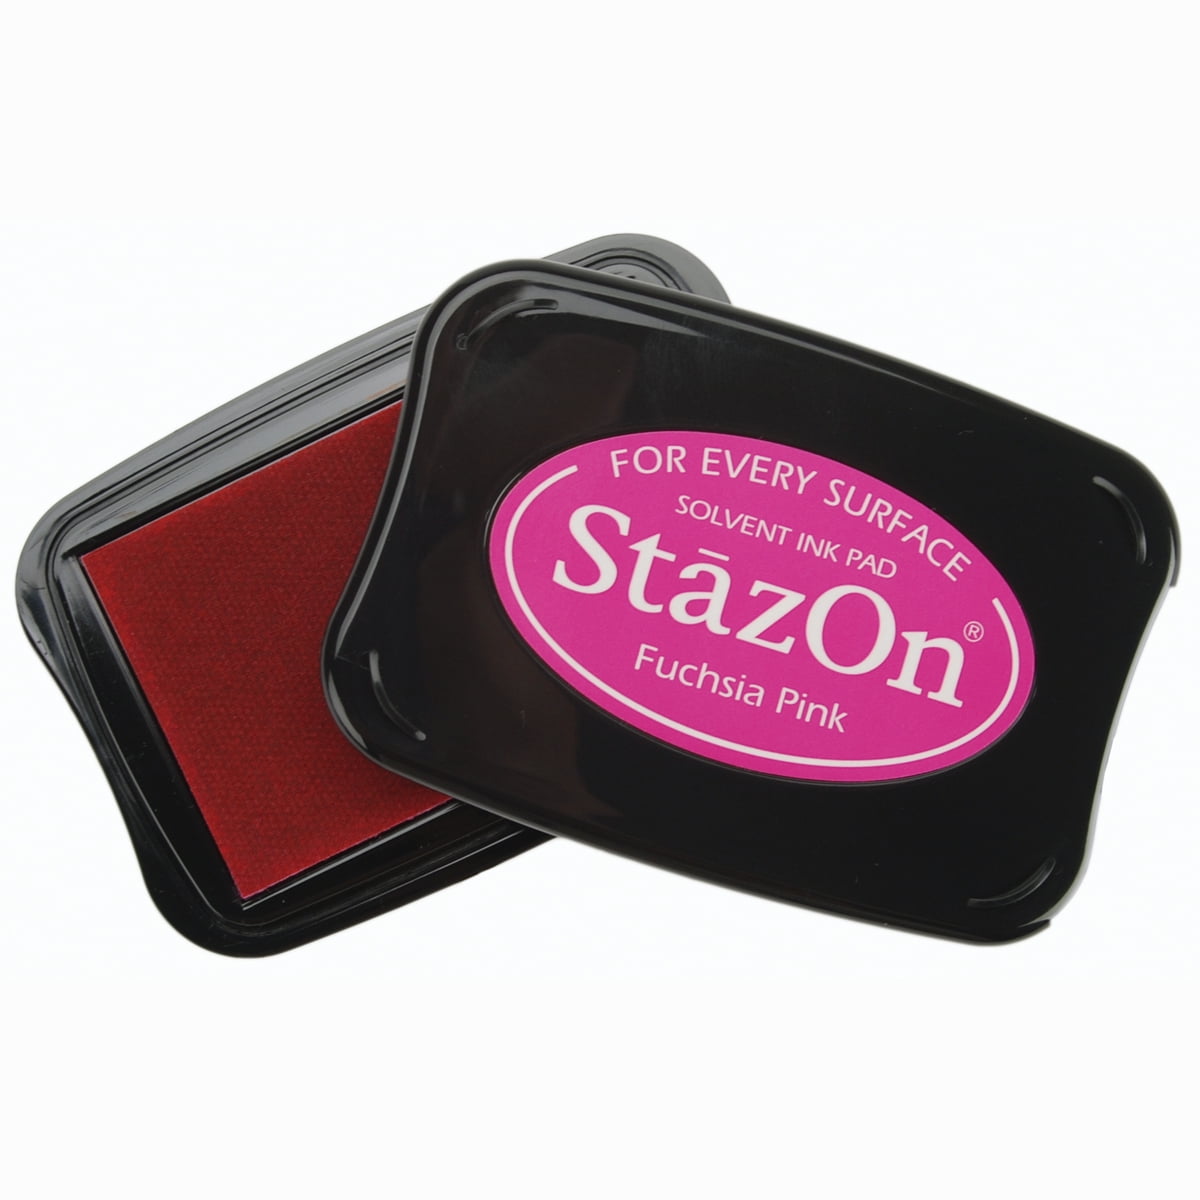 StazOn Solvent Ink Pad Dove Gray